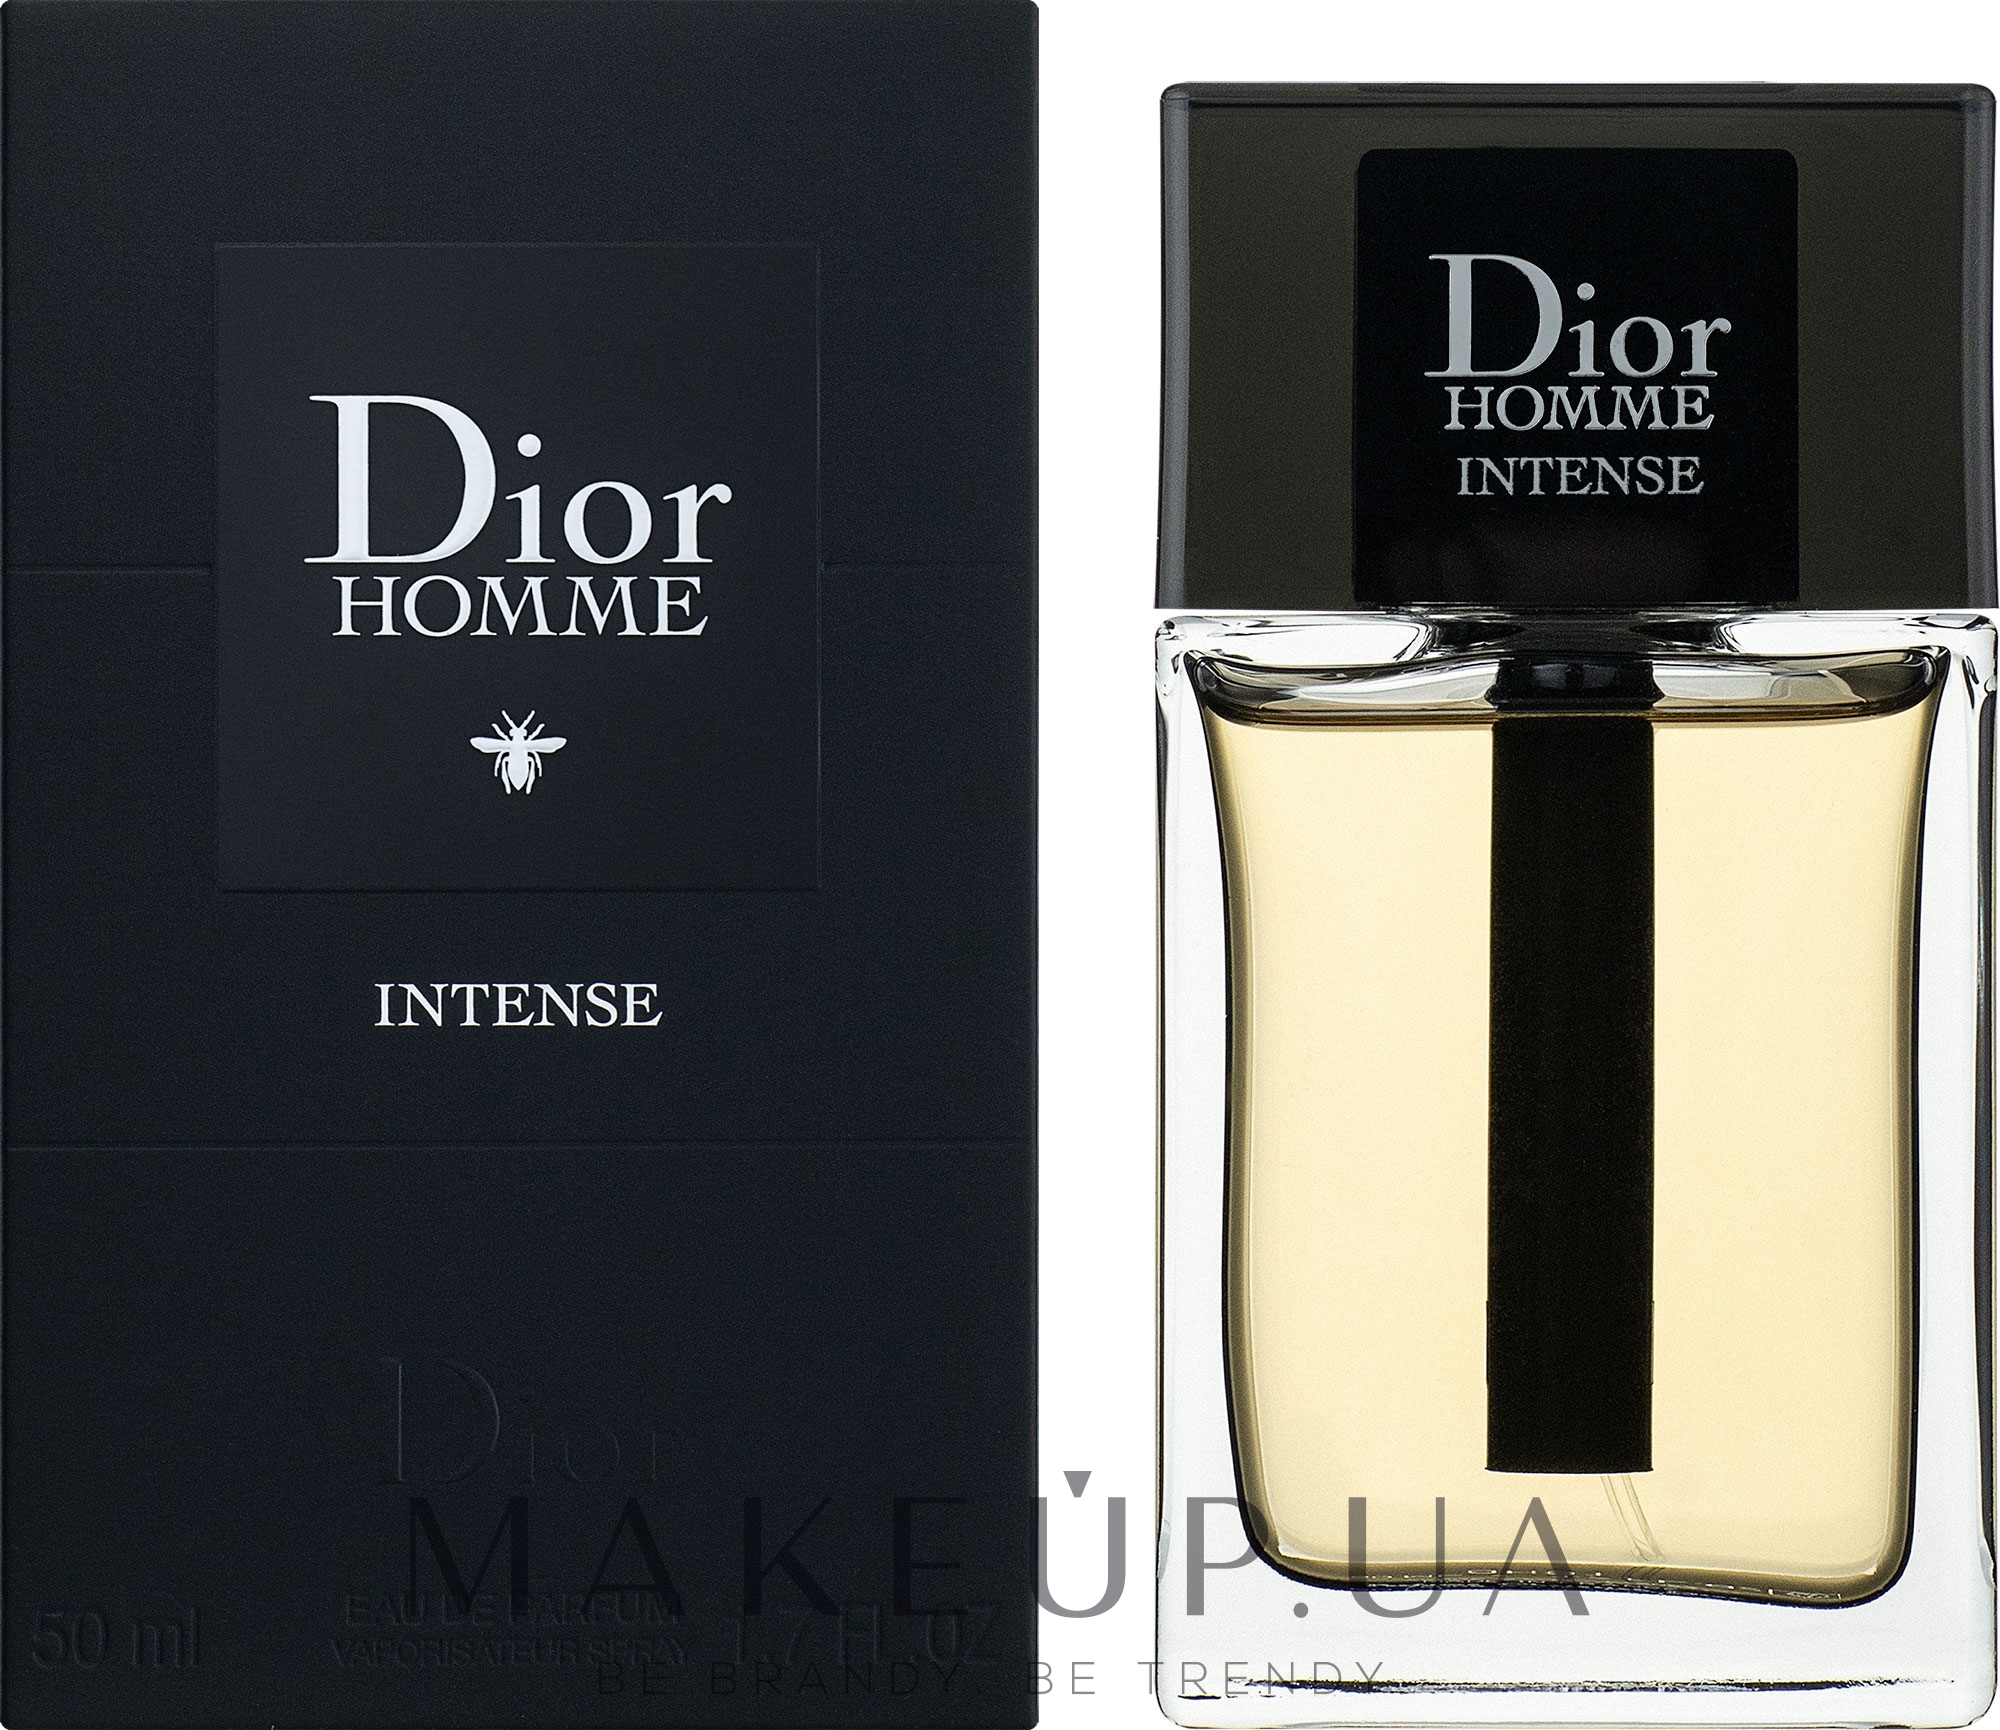 Купить Dior Homme Intense eau de parfum 100 ml в Бишкеке на Parfumerkg